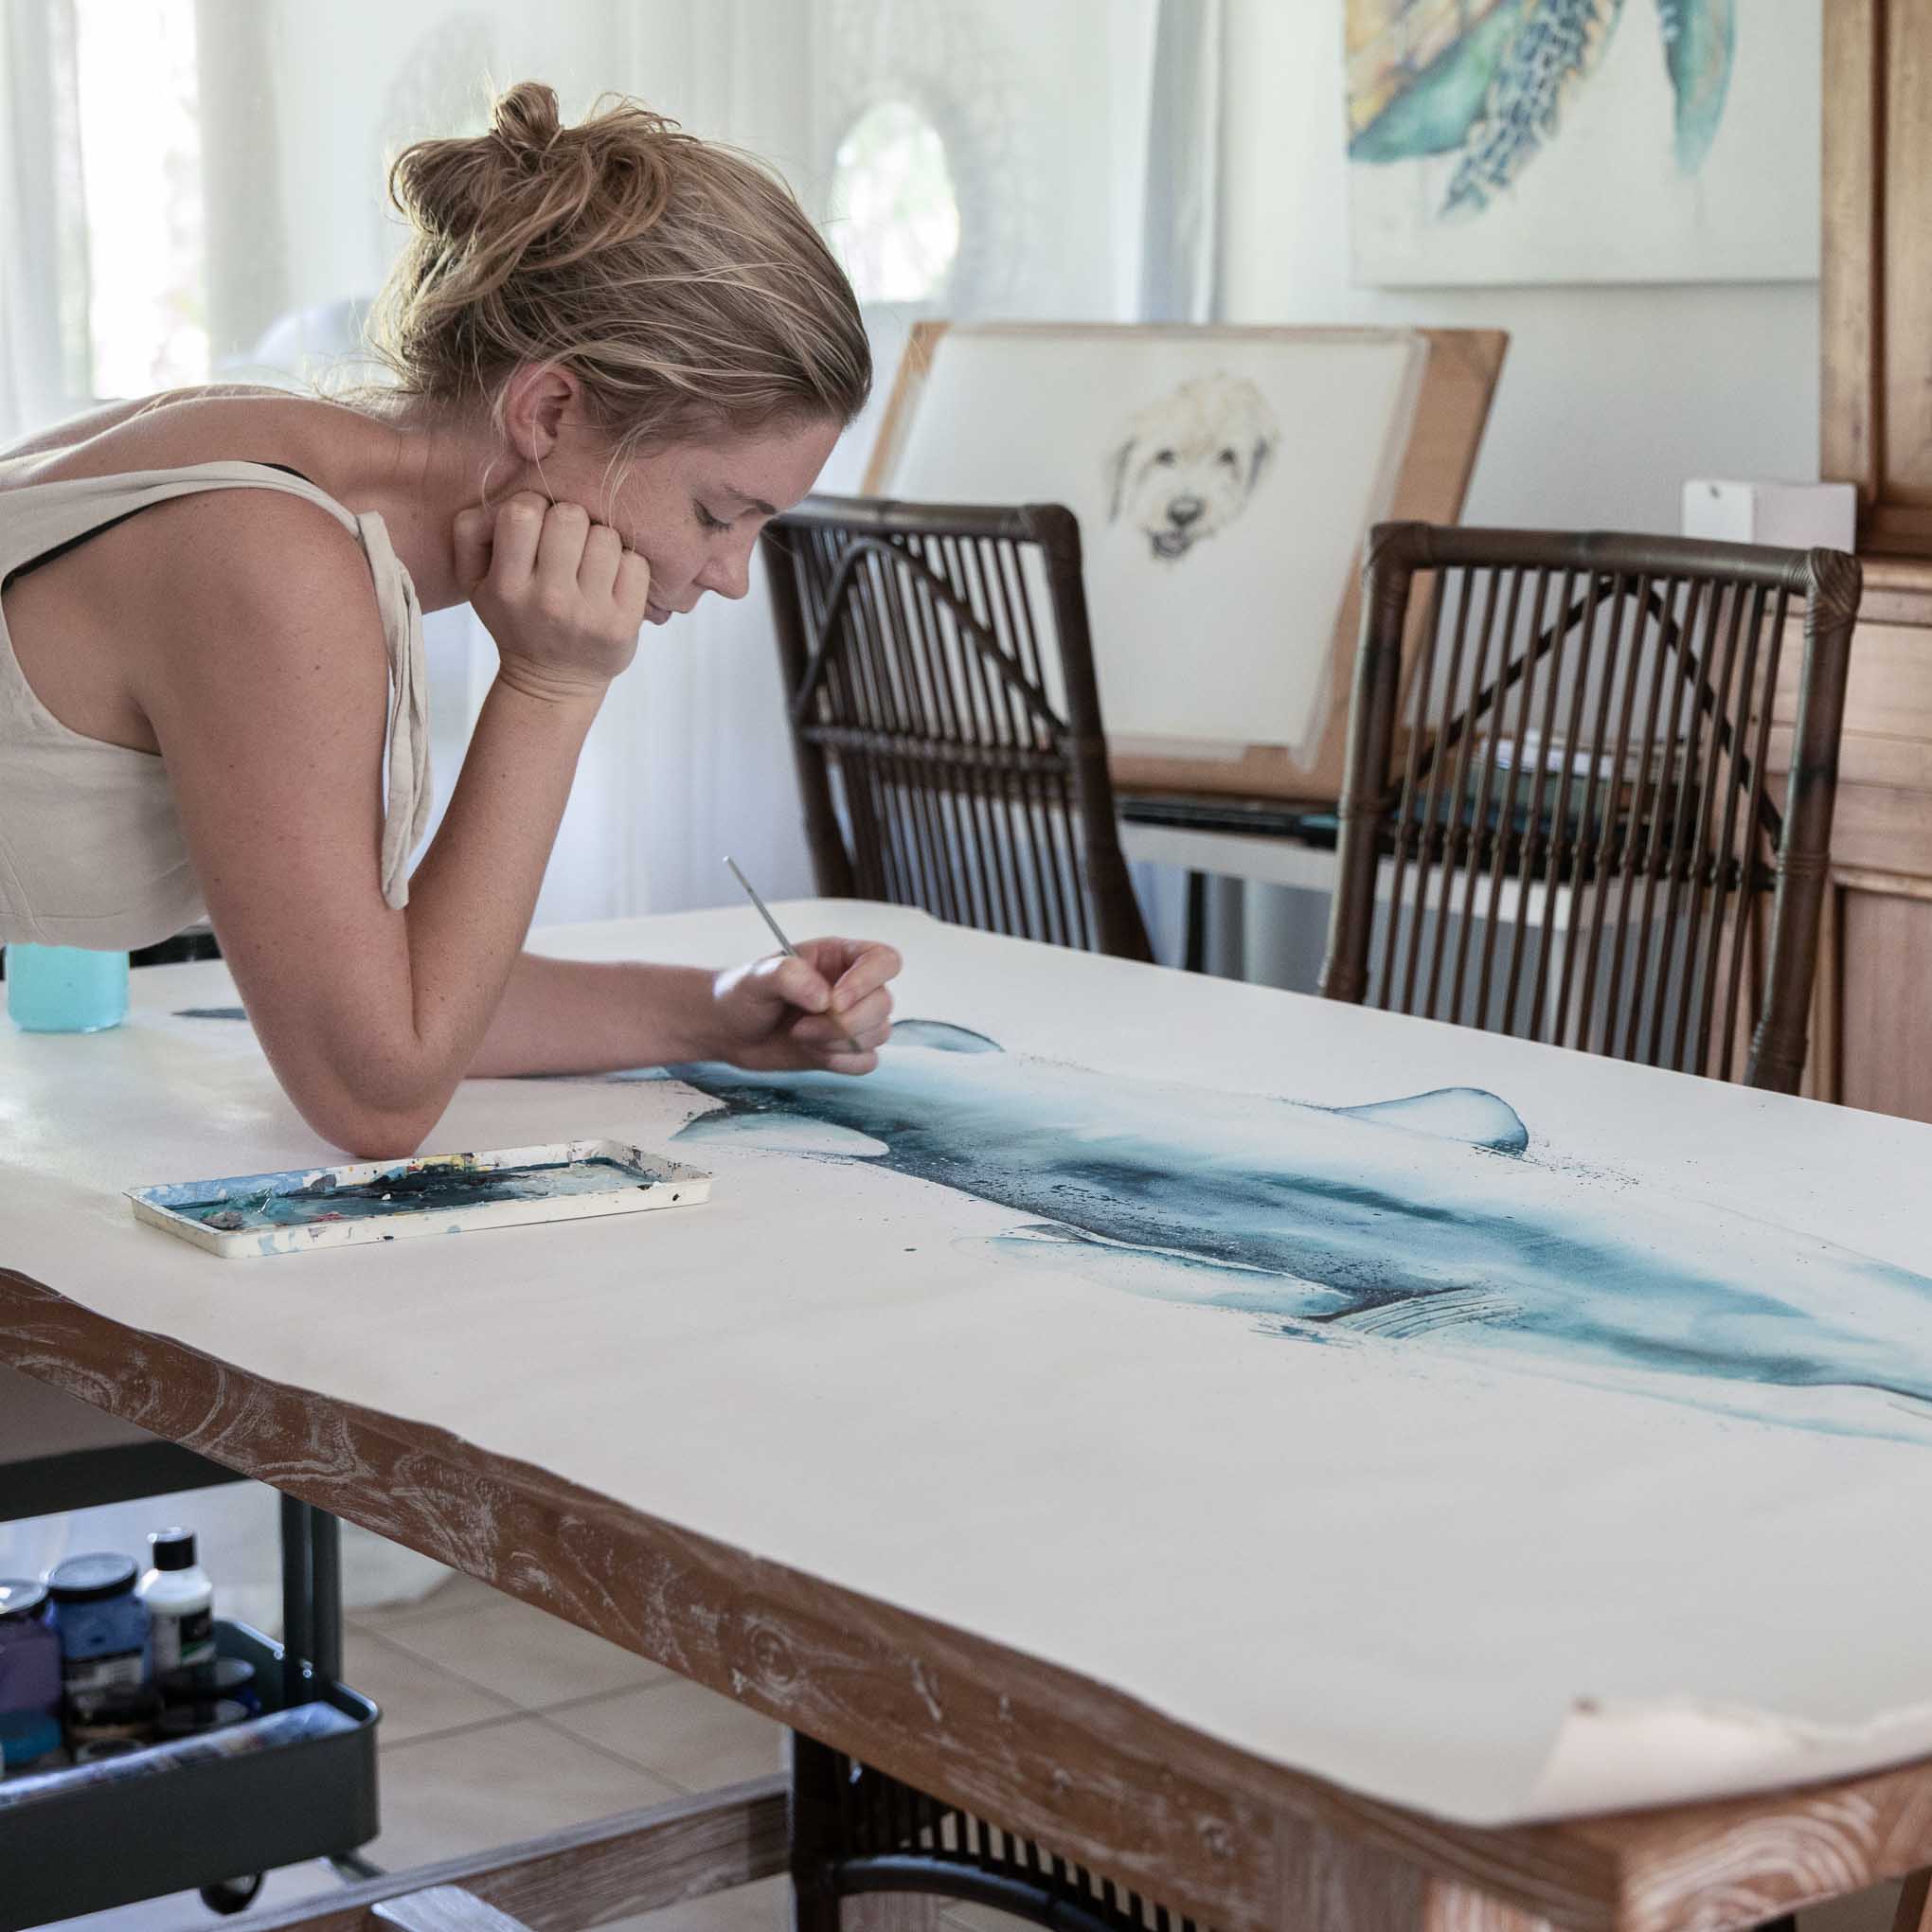 Stephanie Elizabeth painting on a giant shark canvas